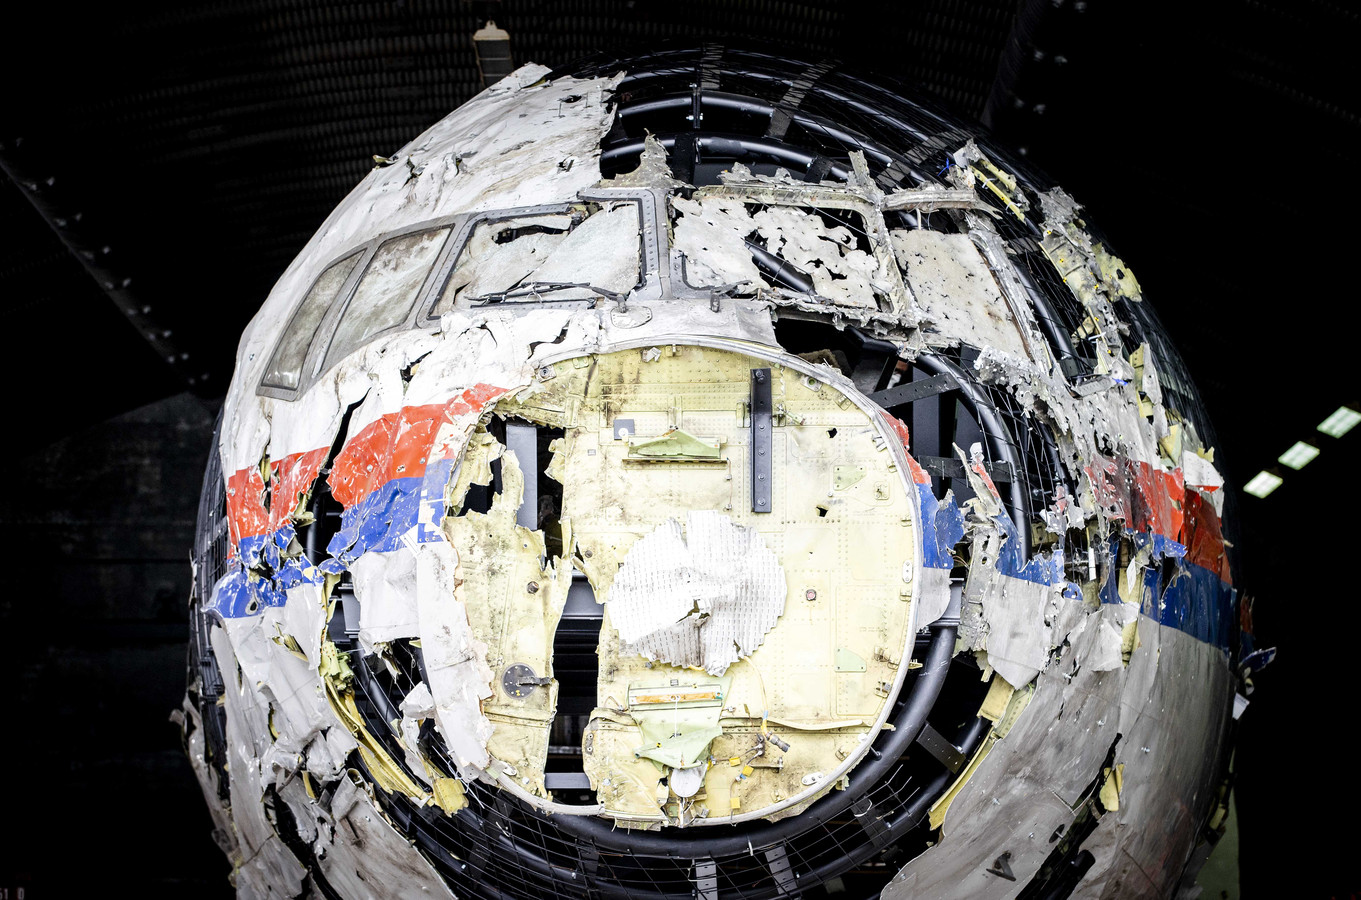 De reconstructie van het in 2014 neergeschoten MH17-toestel op vliegbasis Gilze-Rijen in Nederland.